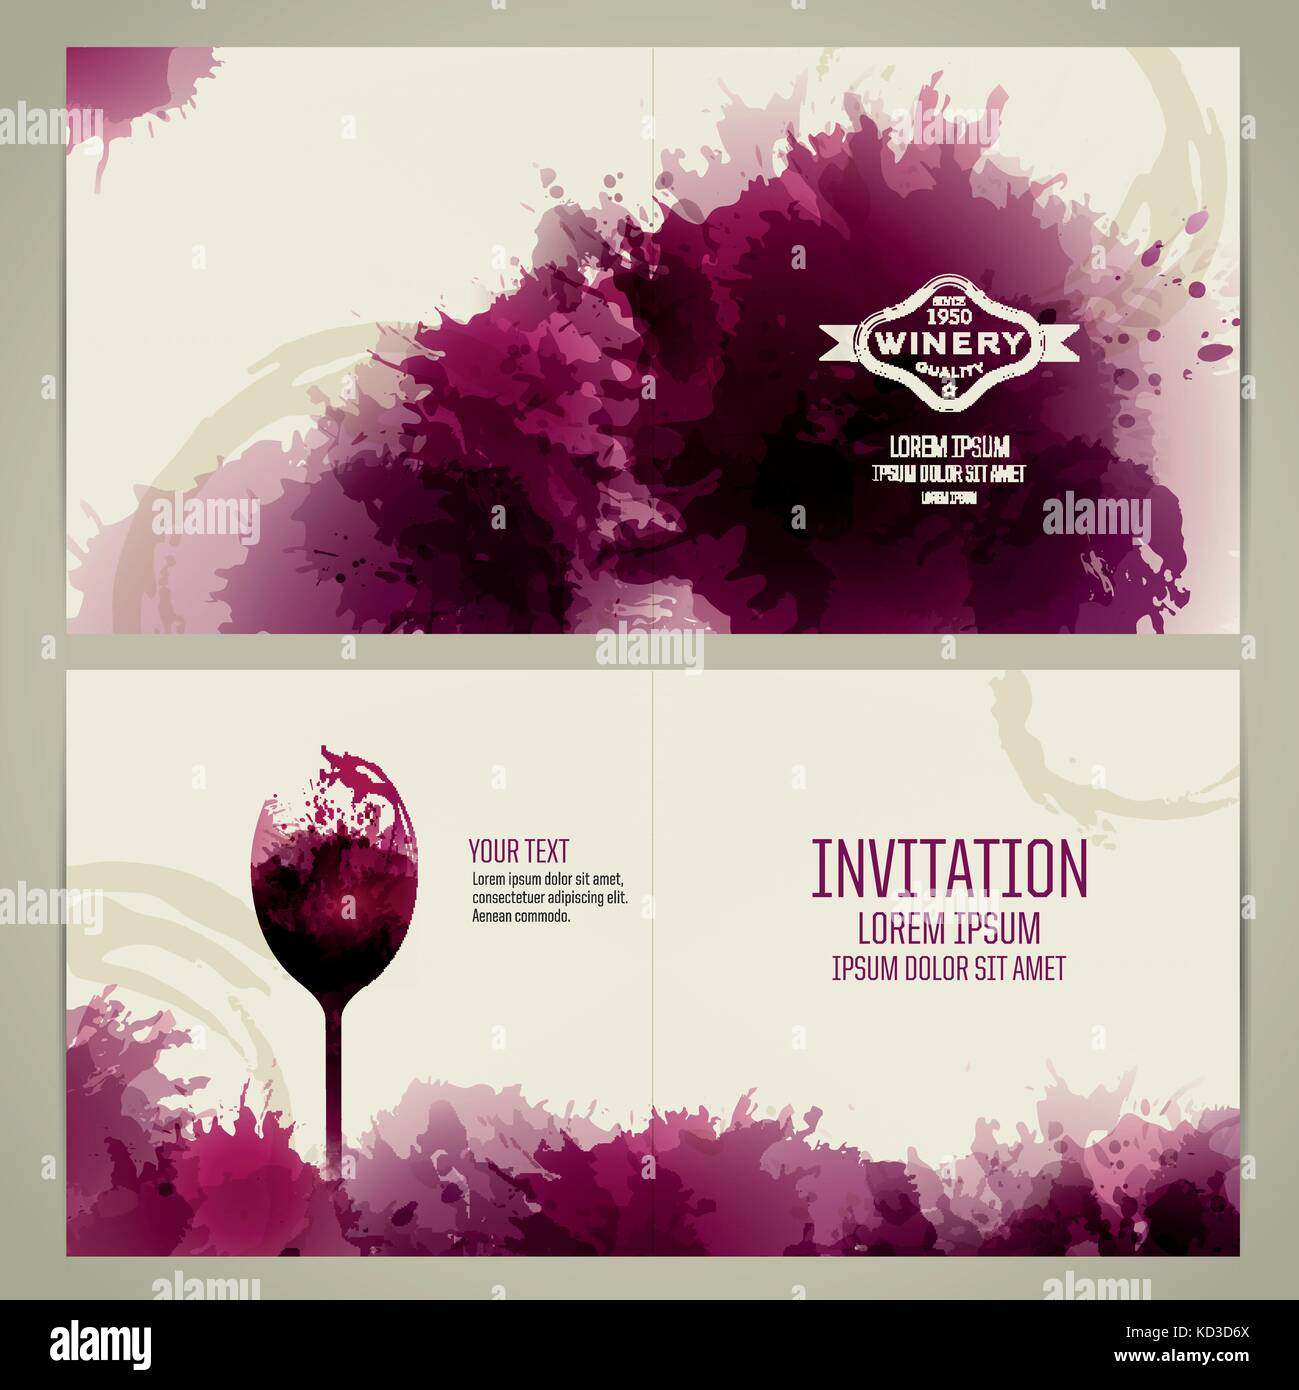 Modello di invito per un evento o una festa. Adatto per eventi di degustazione di vino o di presentazione. Illustrazione Vettoriale